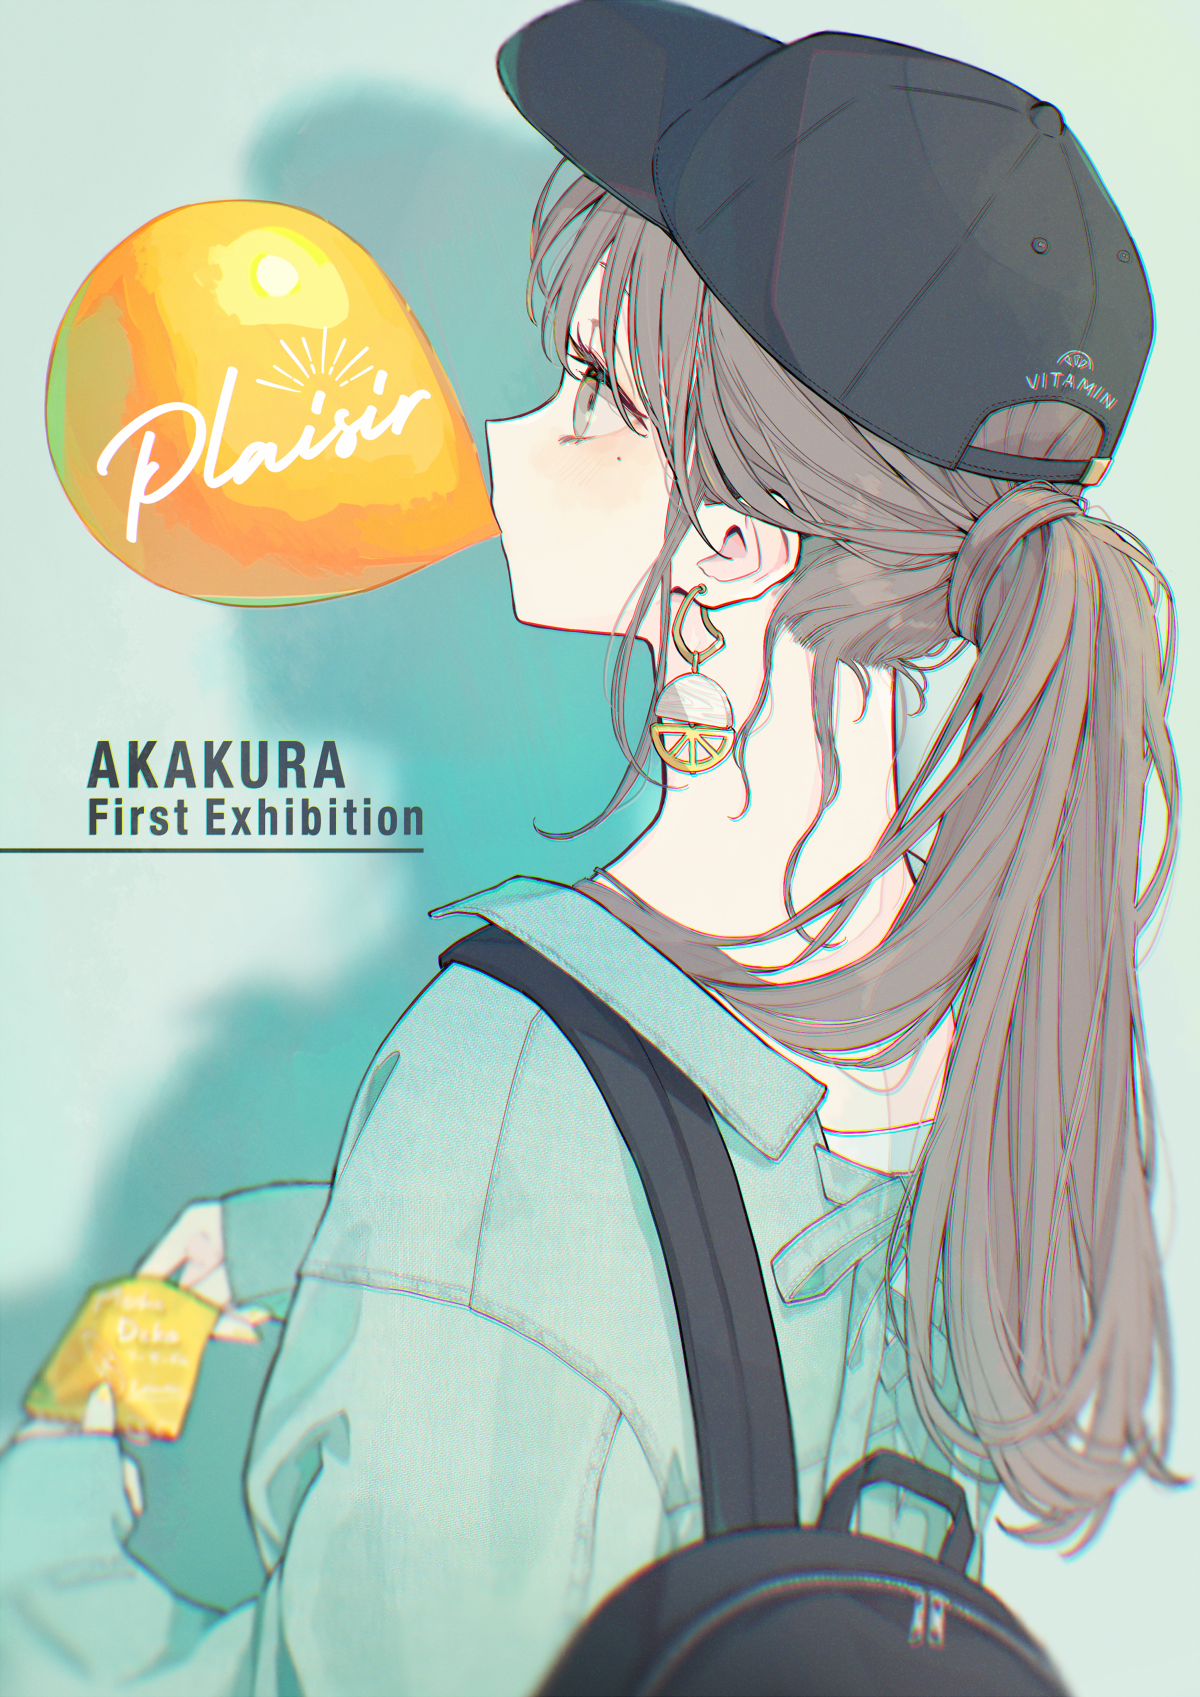 Anime Girls Fantasy Girl Bubble Gum Hat Digital Art 1200x1697